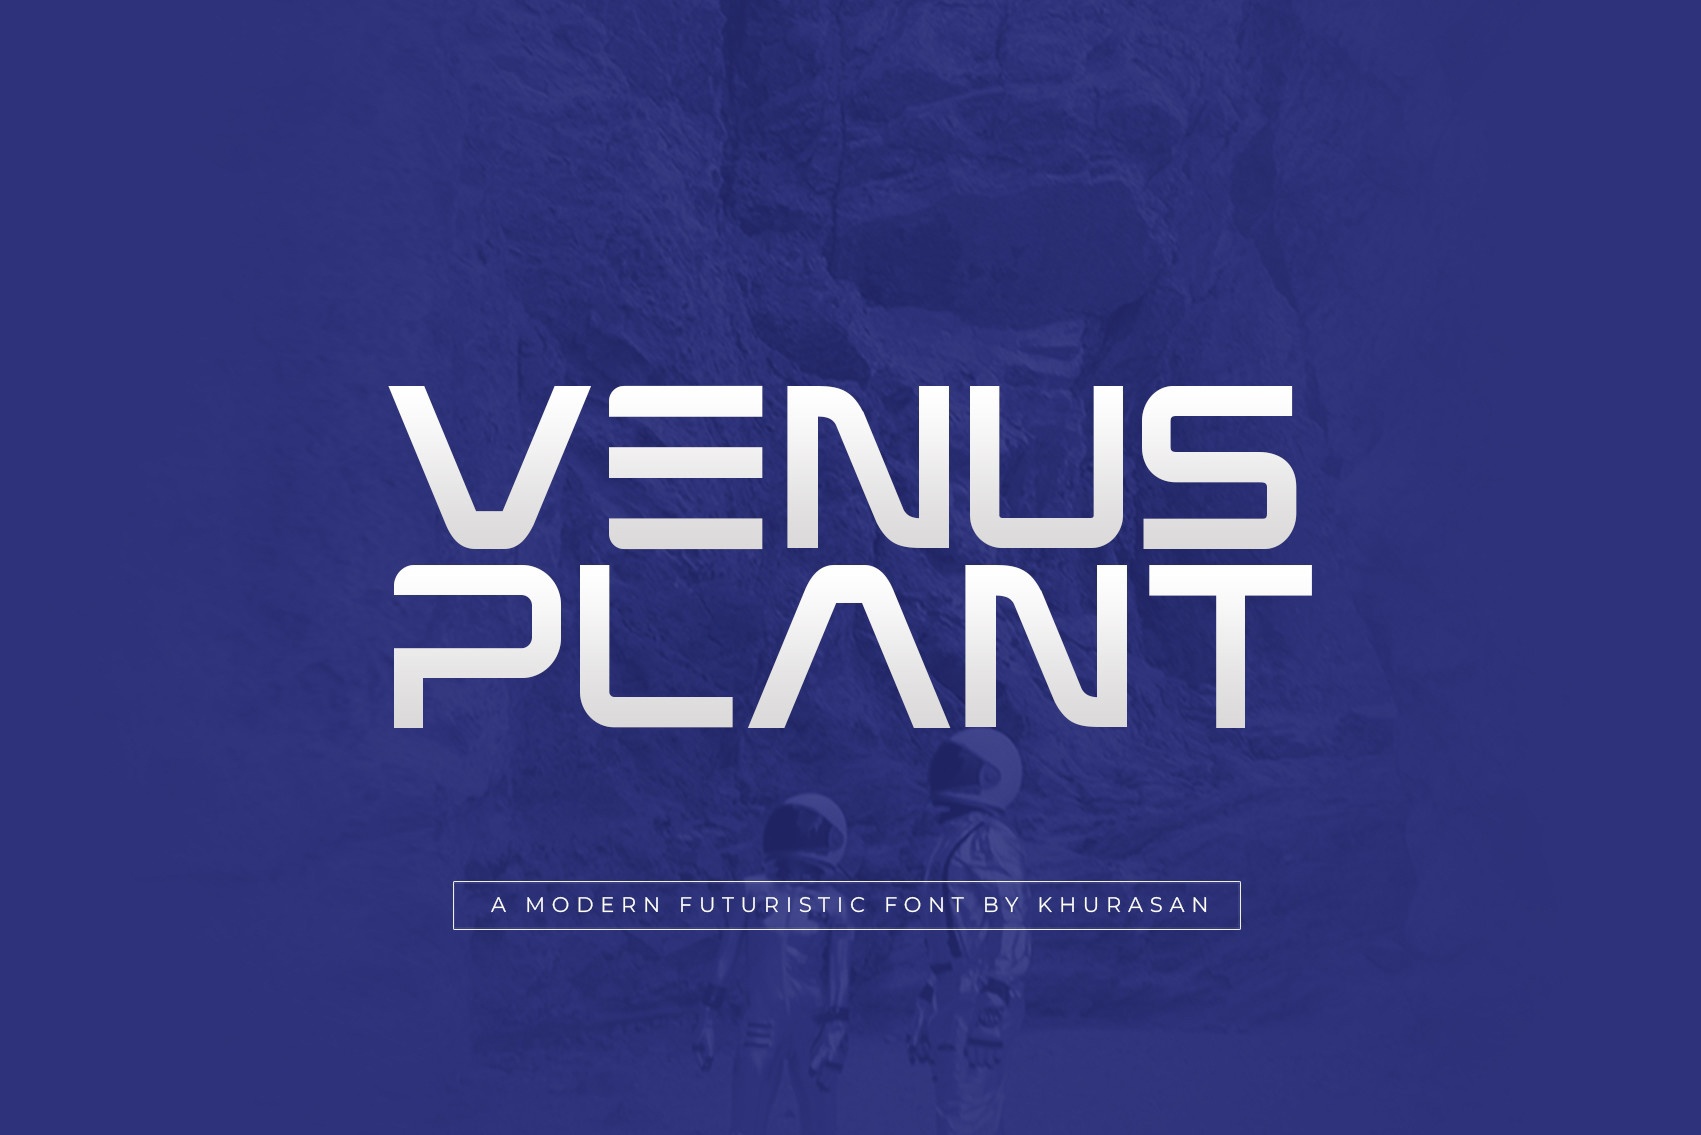 Ejemplo de fuente Venus Plant